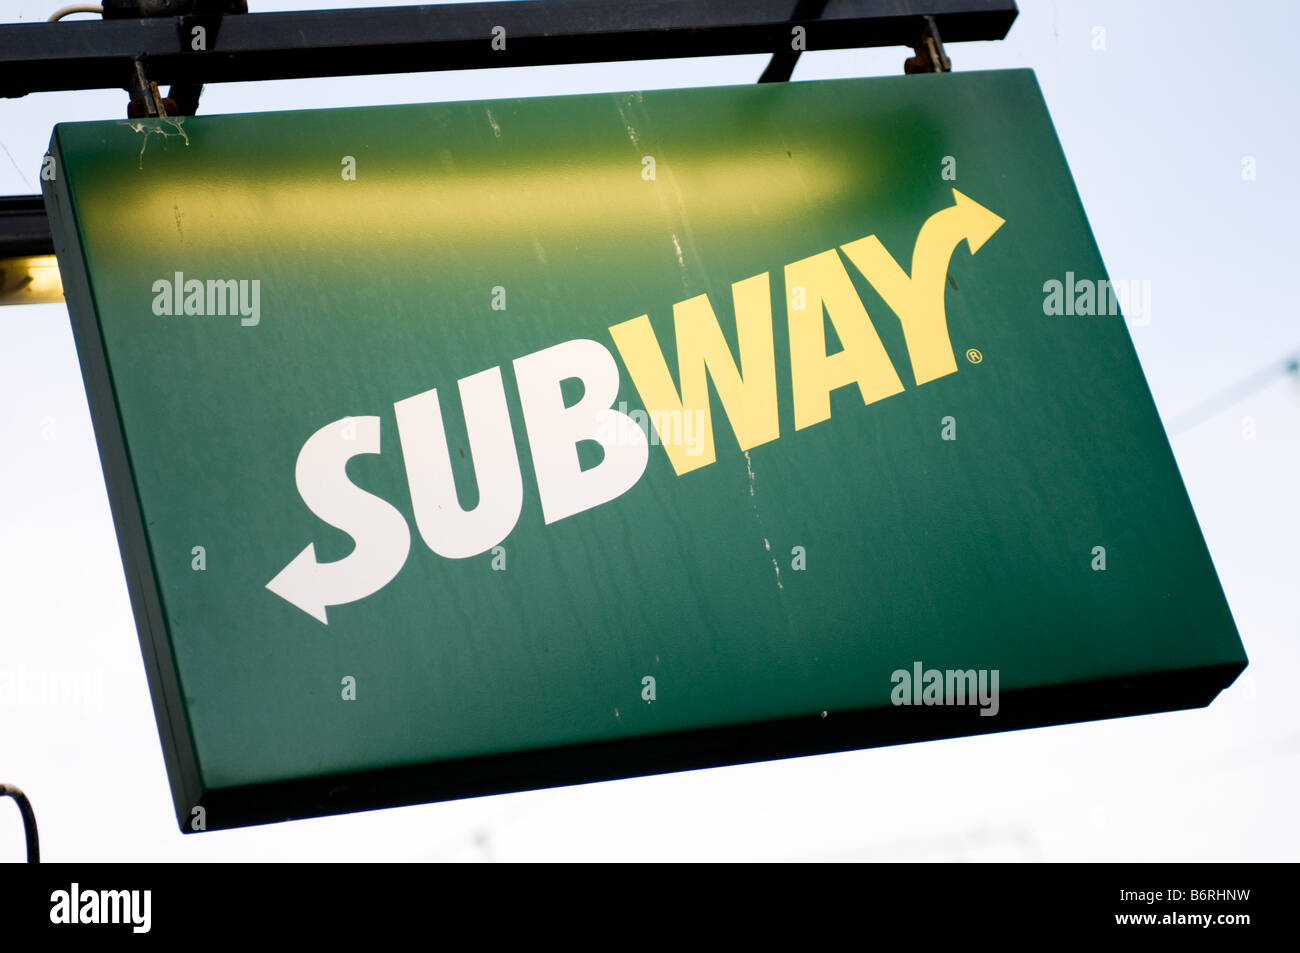 Subway sandwich bar sign Stock Photo